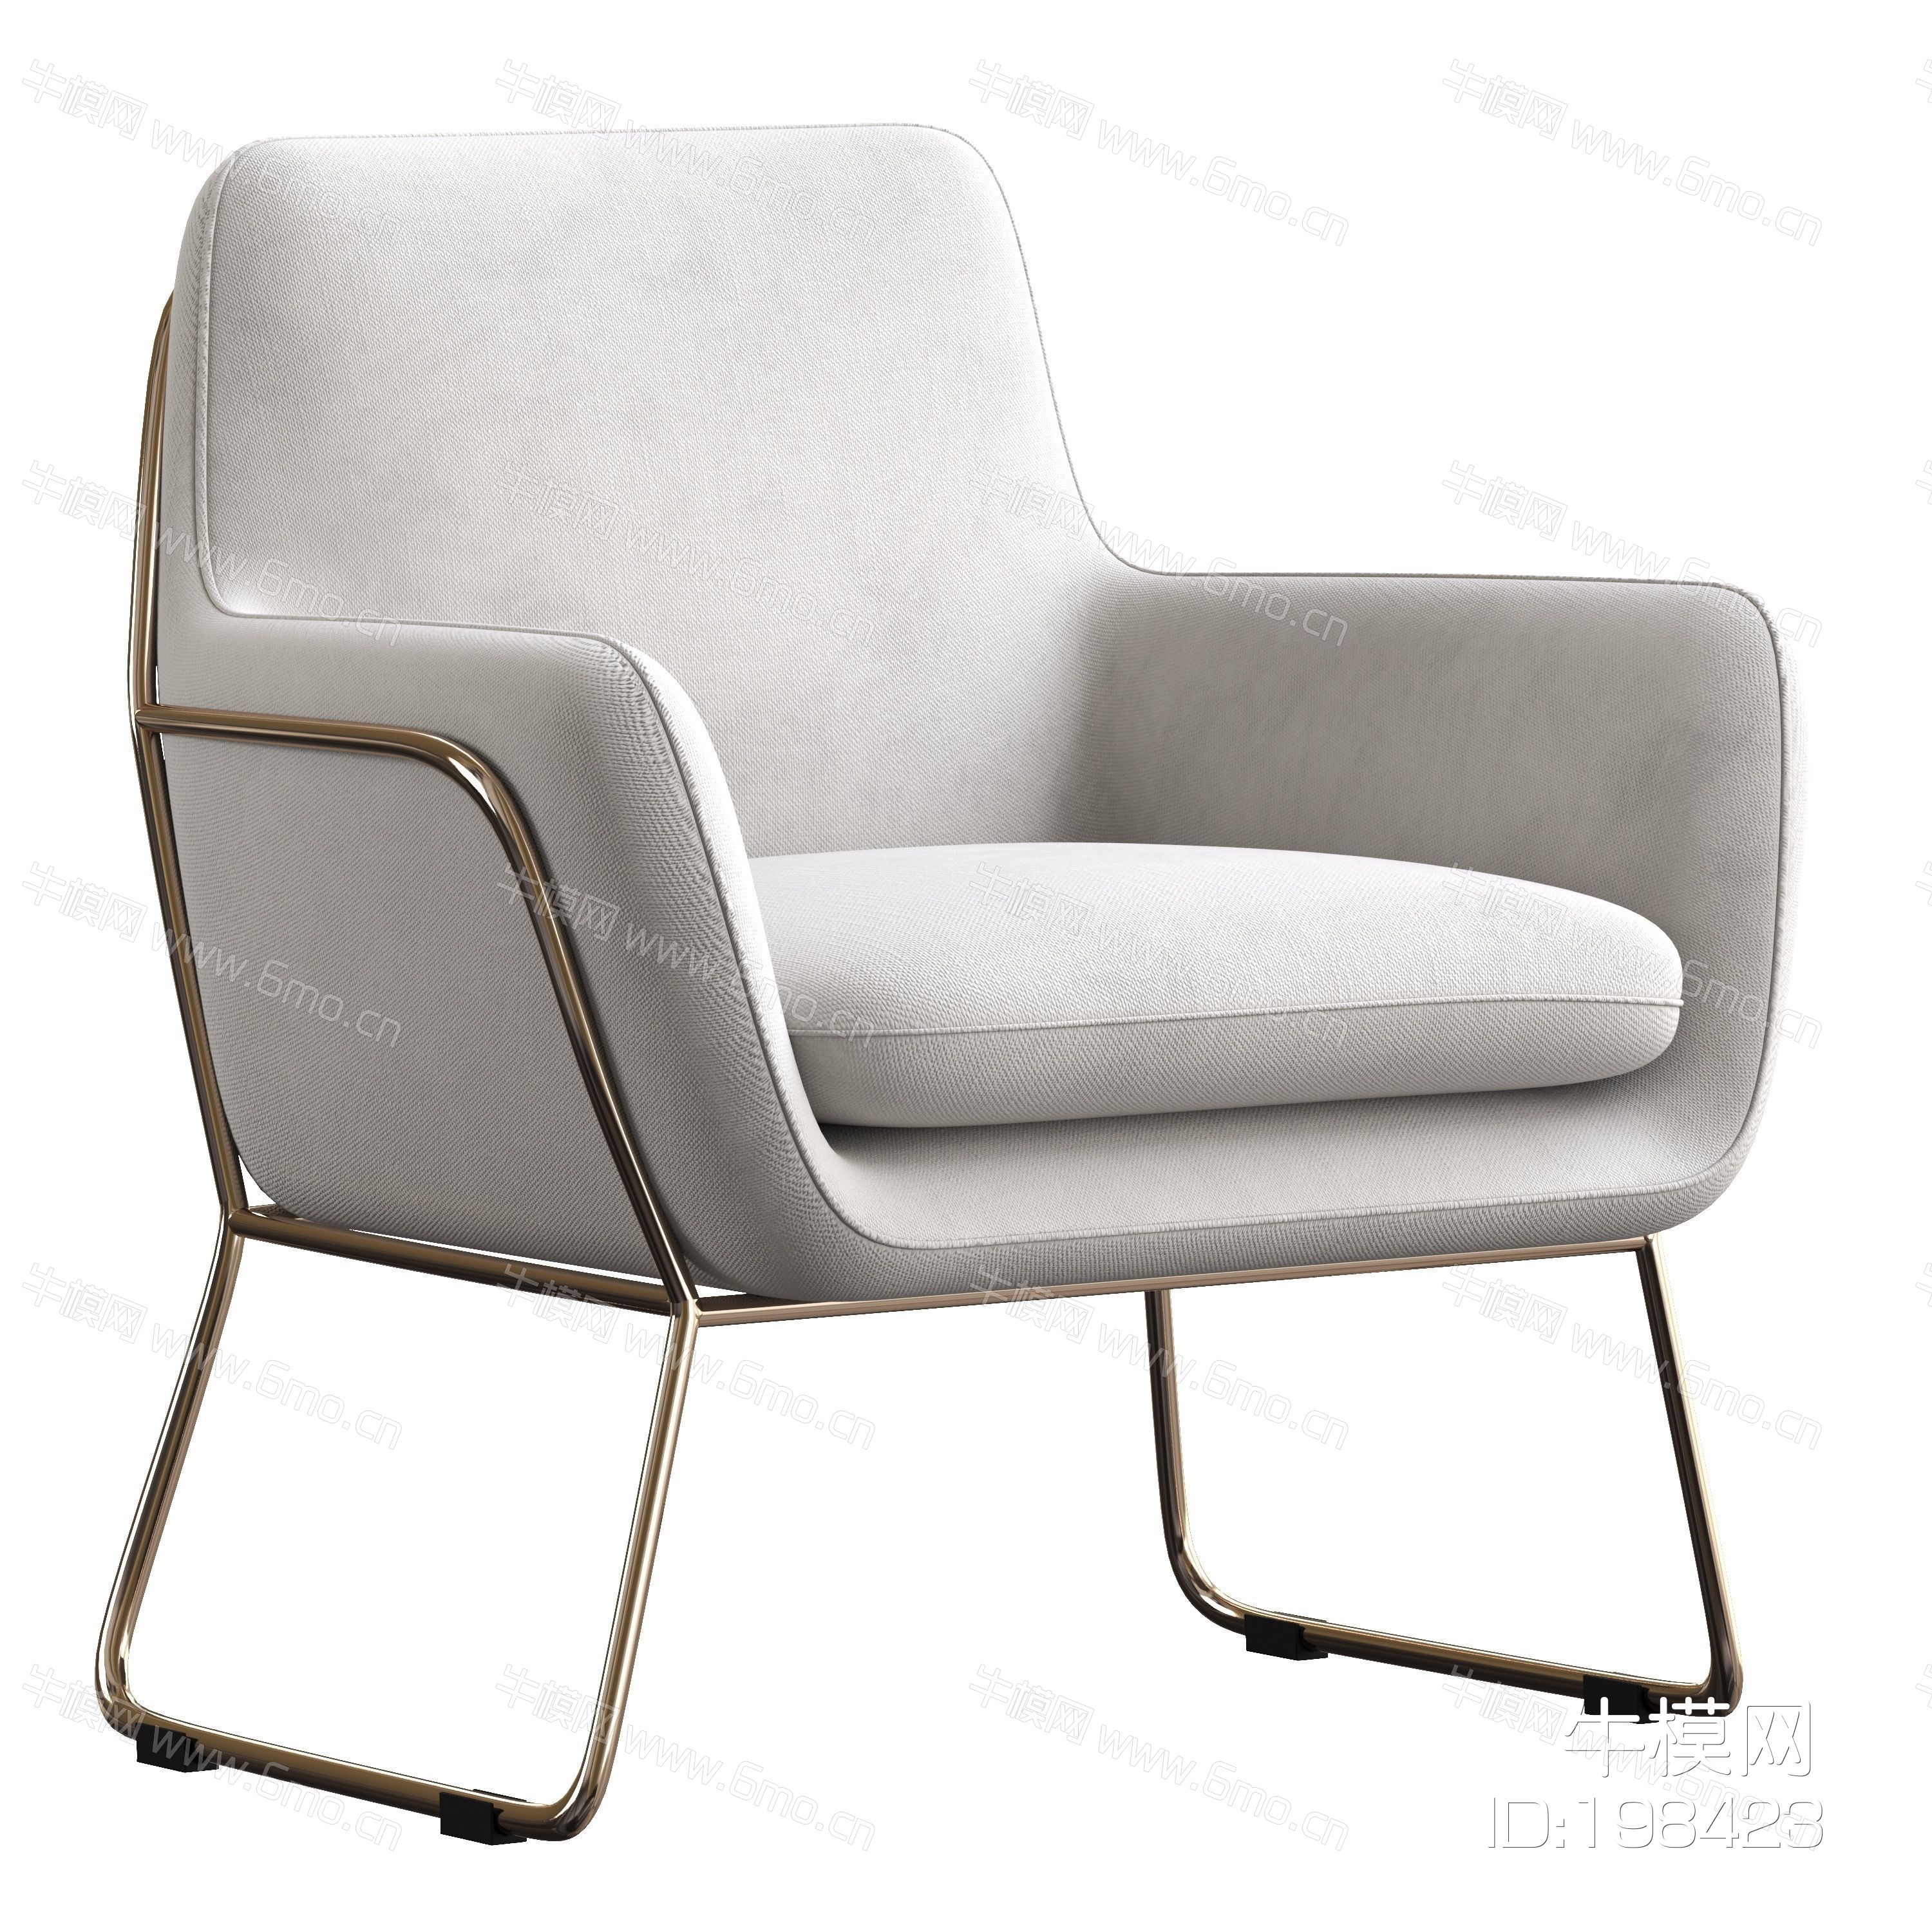 0赫尔曼扶手椅 布面座椅,休闲椅子,椅子